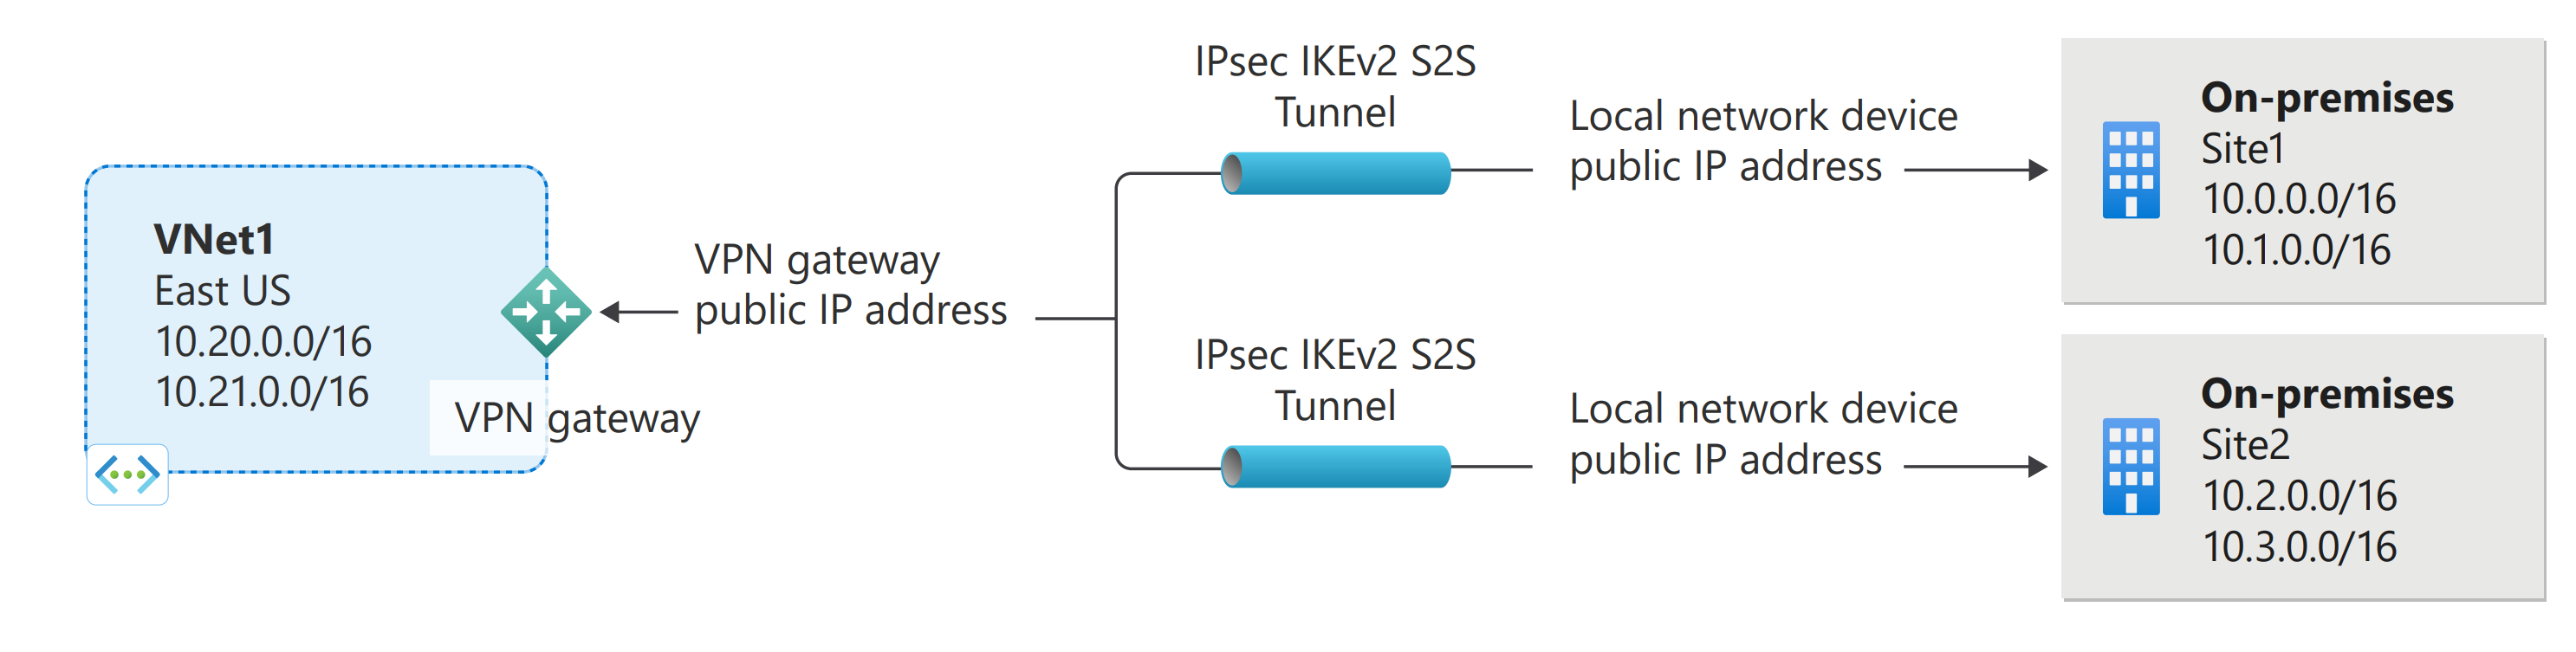 Diagramm zur Darstellung mehrerer Site-to-Site Azure VPN Gateway-Verbindungen.